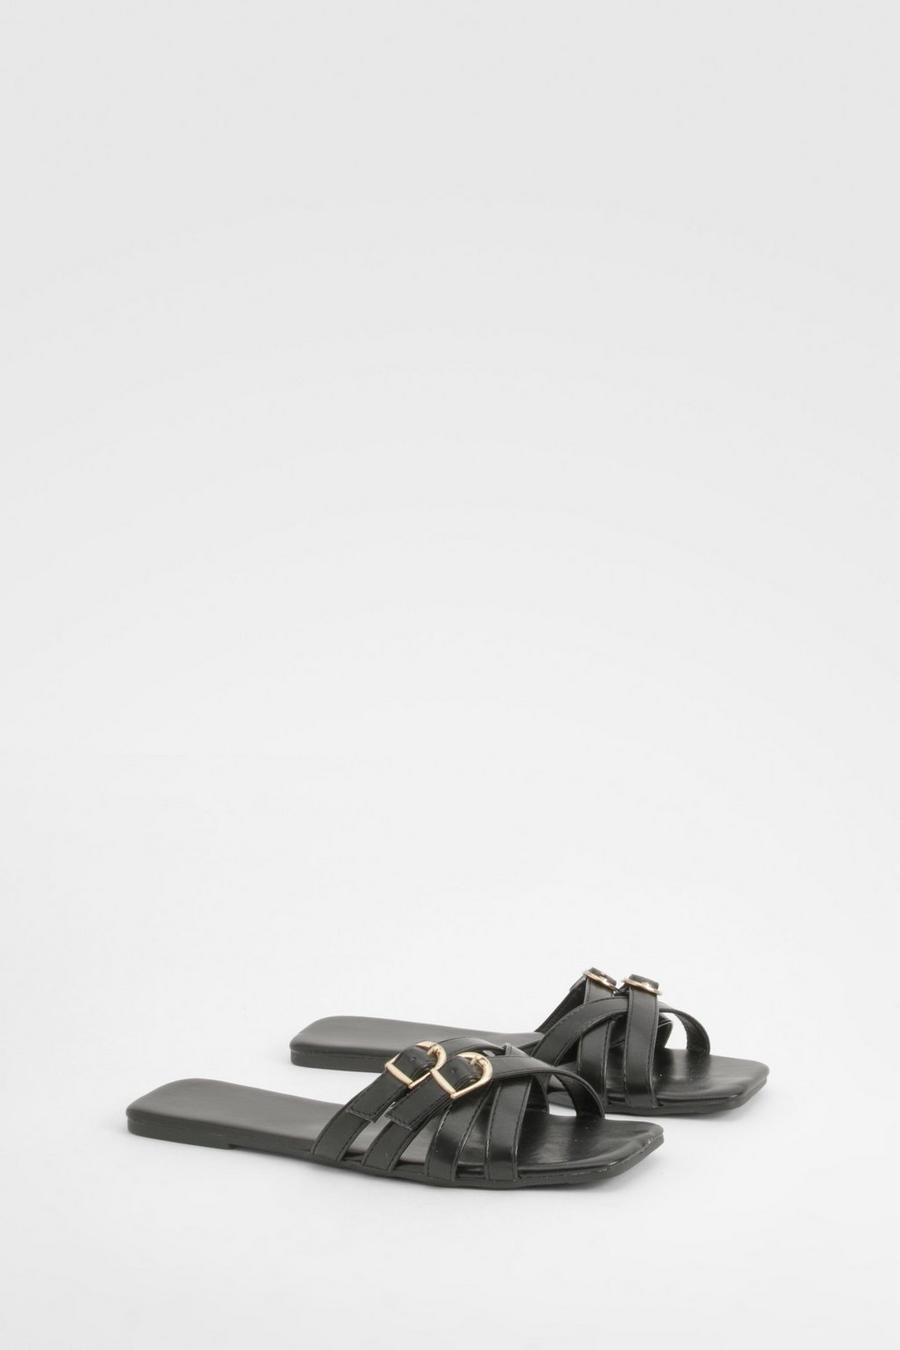 Black Sandaler med fyrkantig tå och dubbla spännen